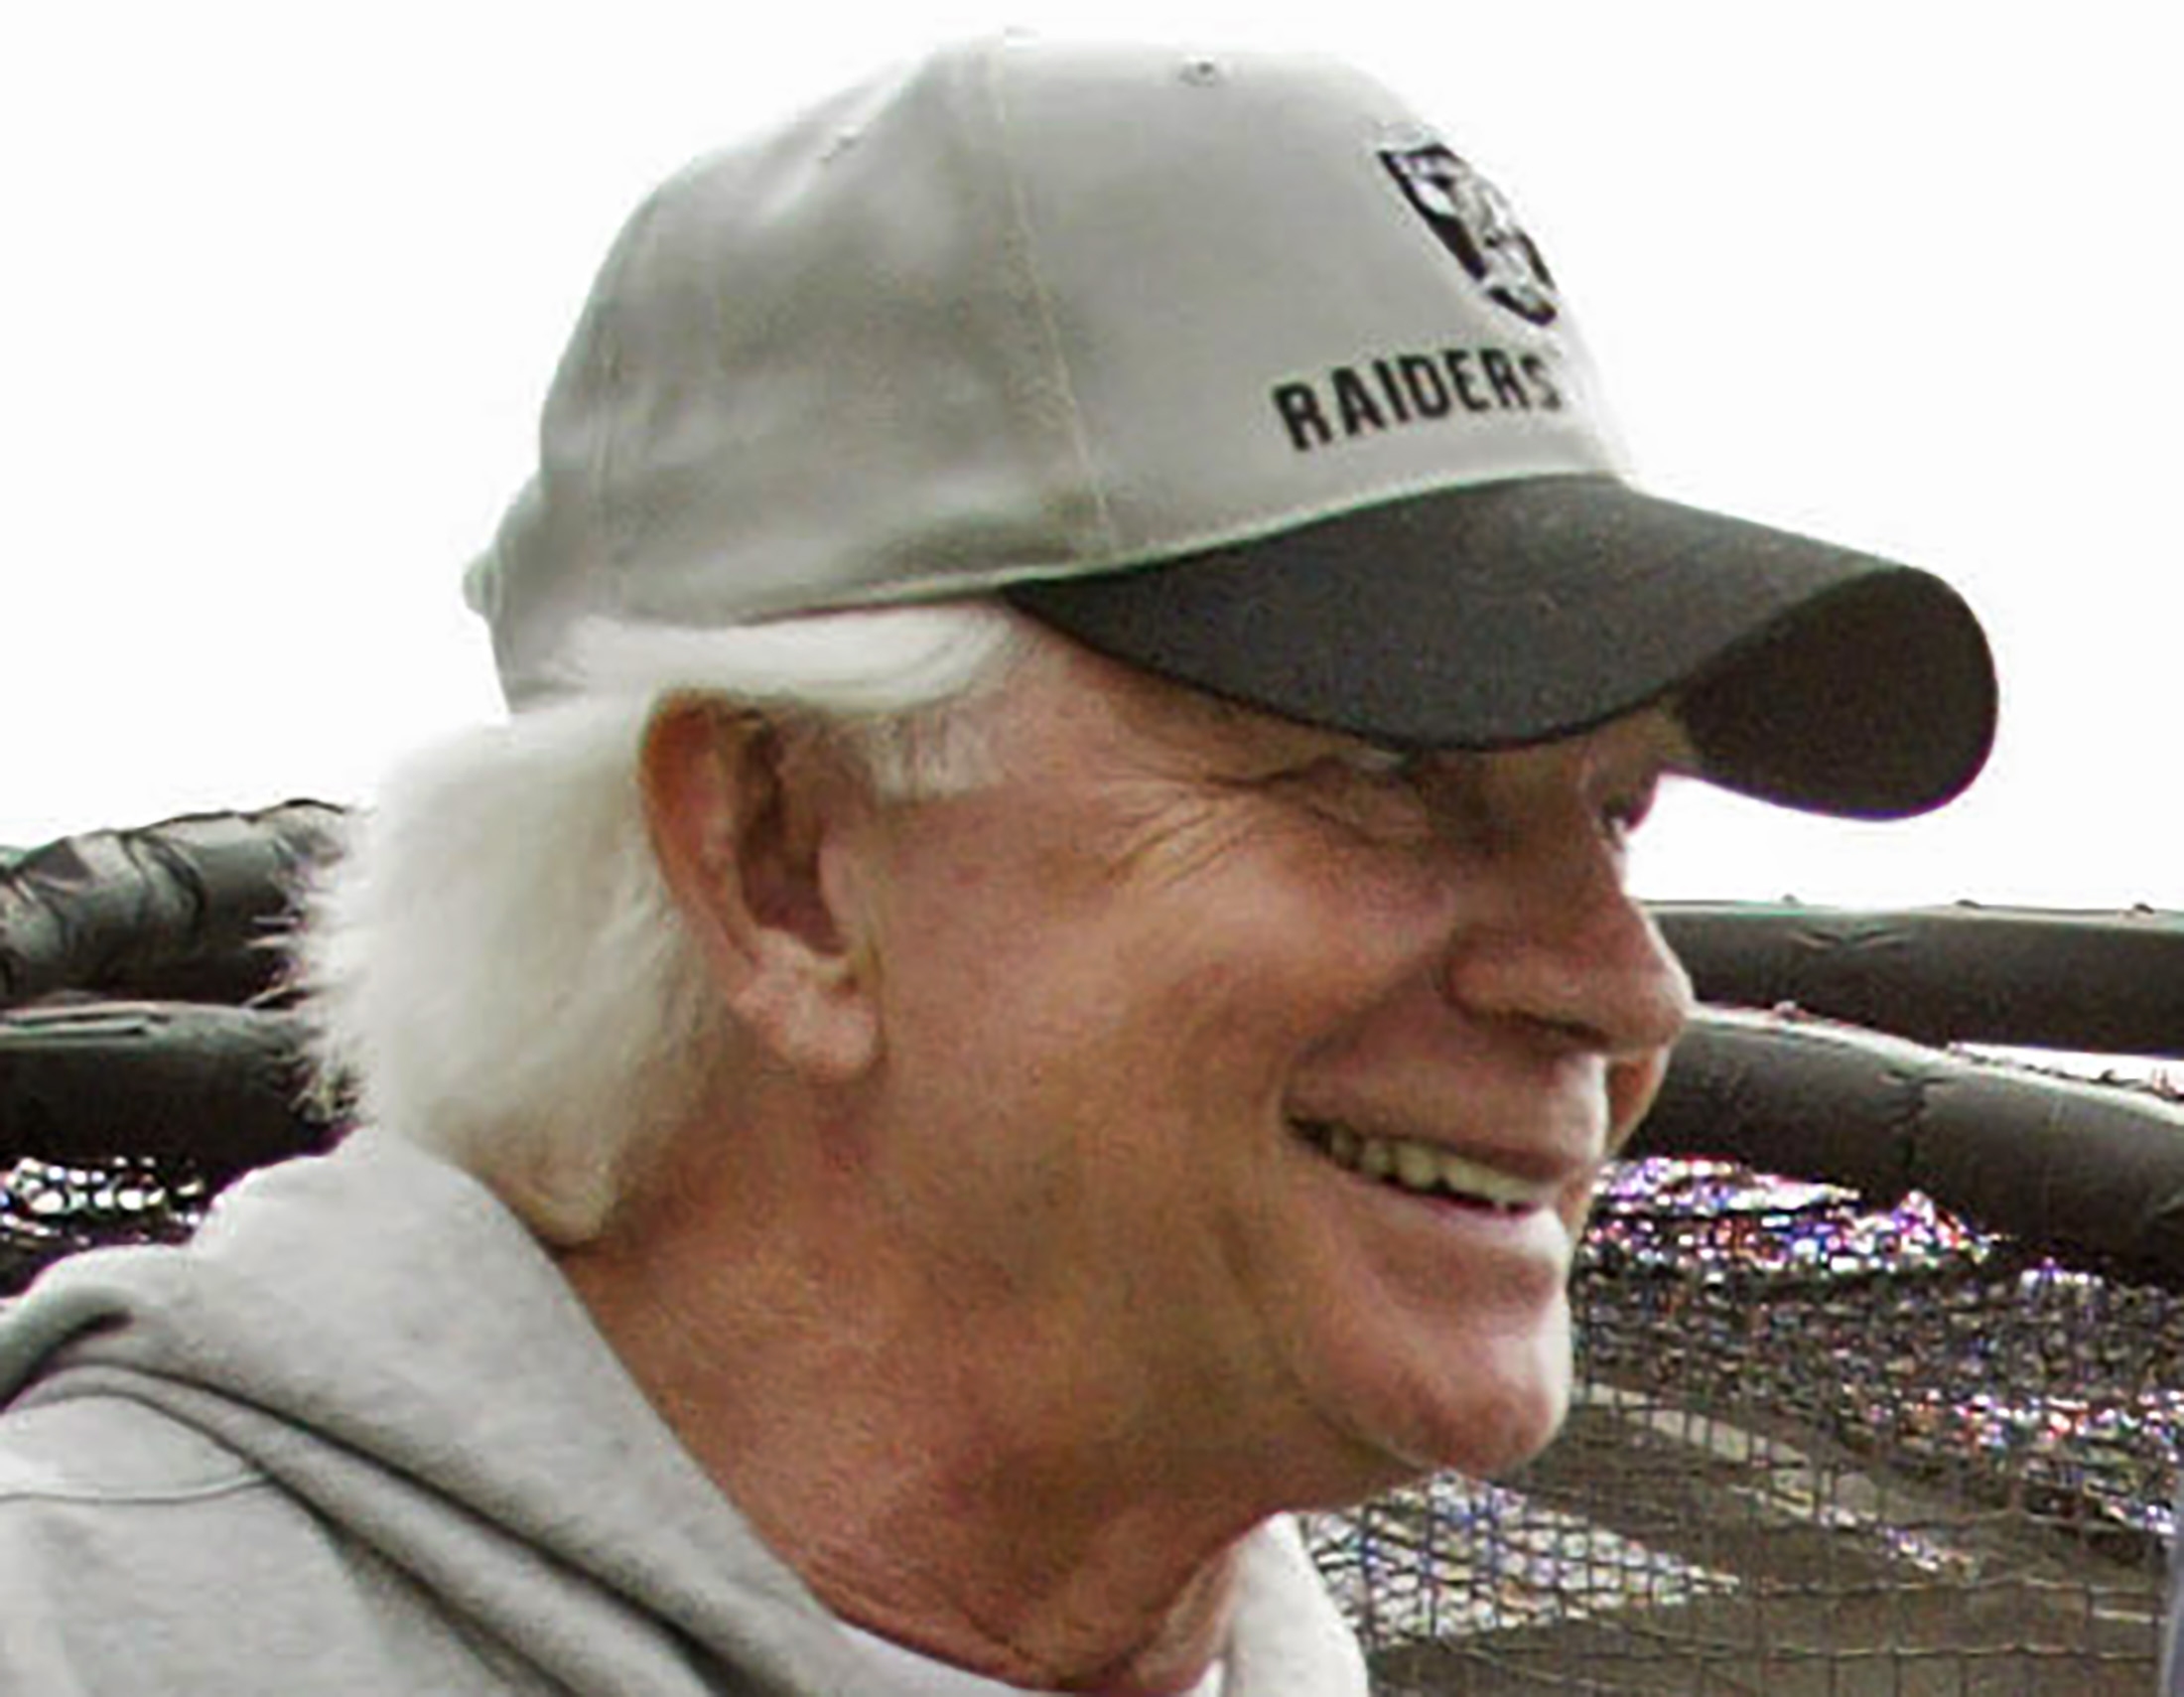 Ken Stabler, Oakland Raiders legendary quarterback, dies - CBS News